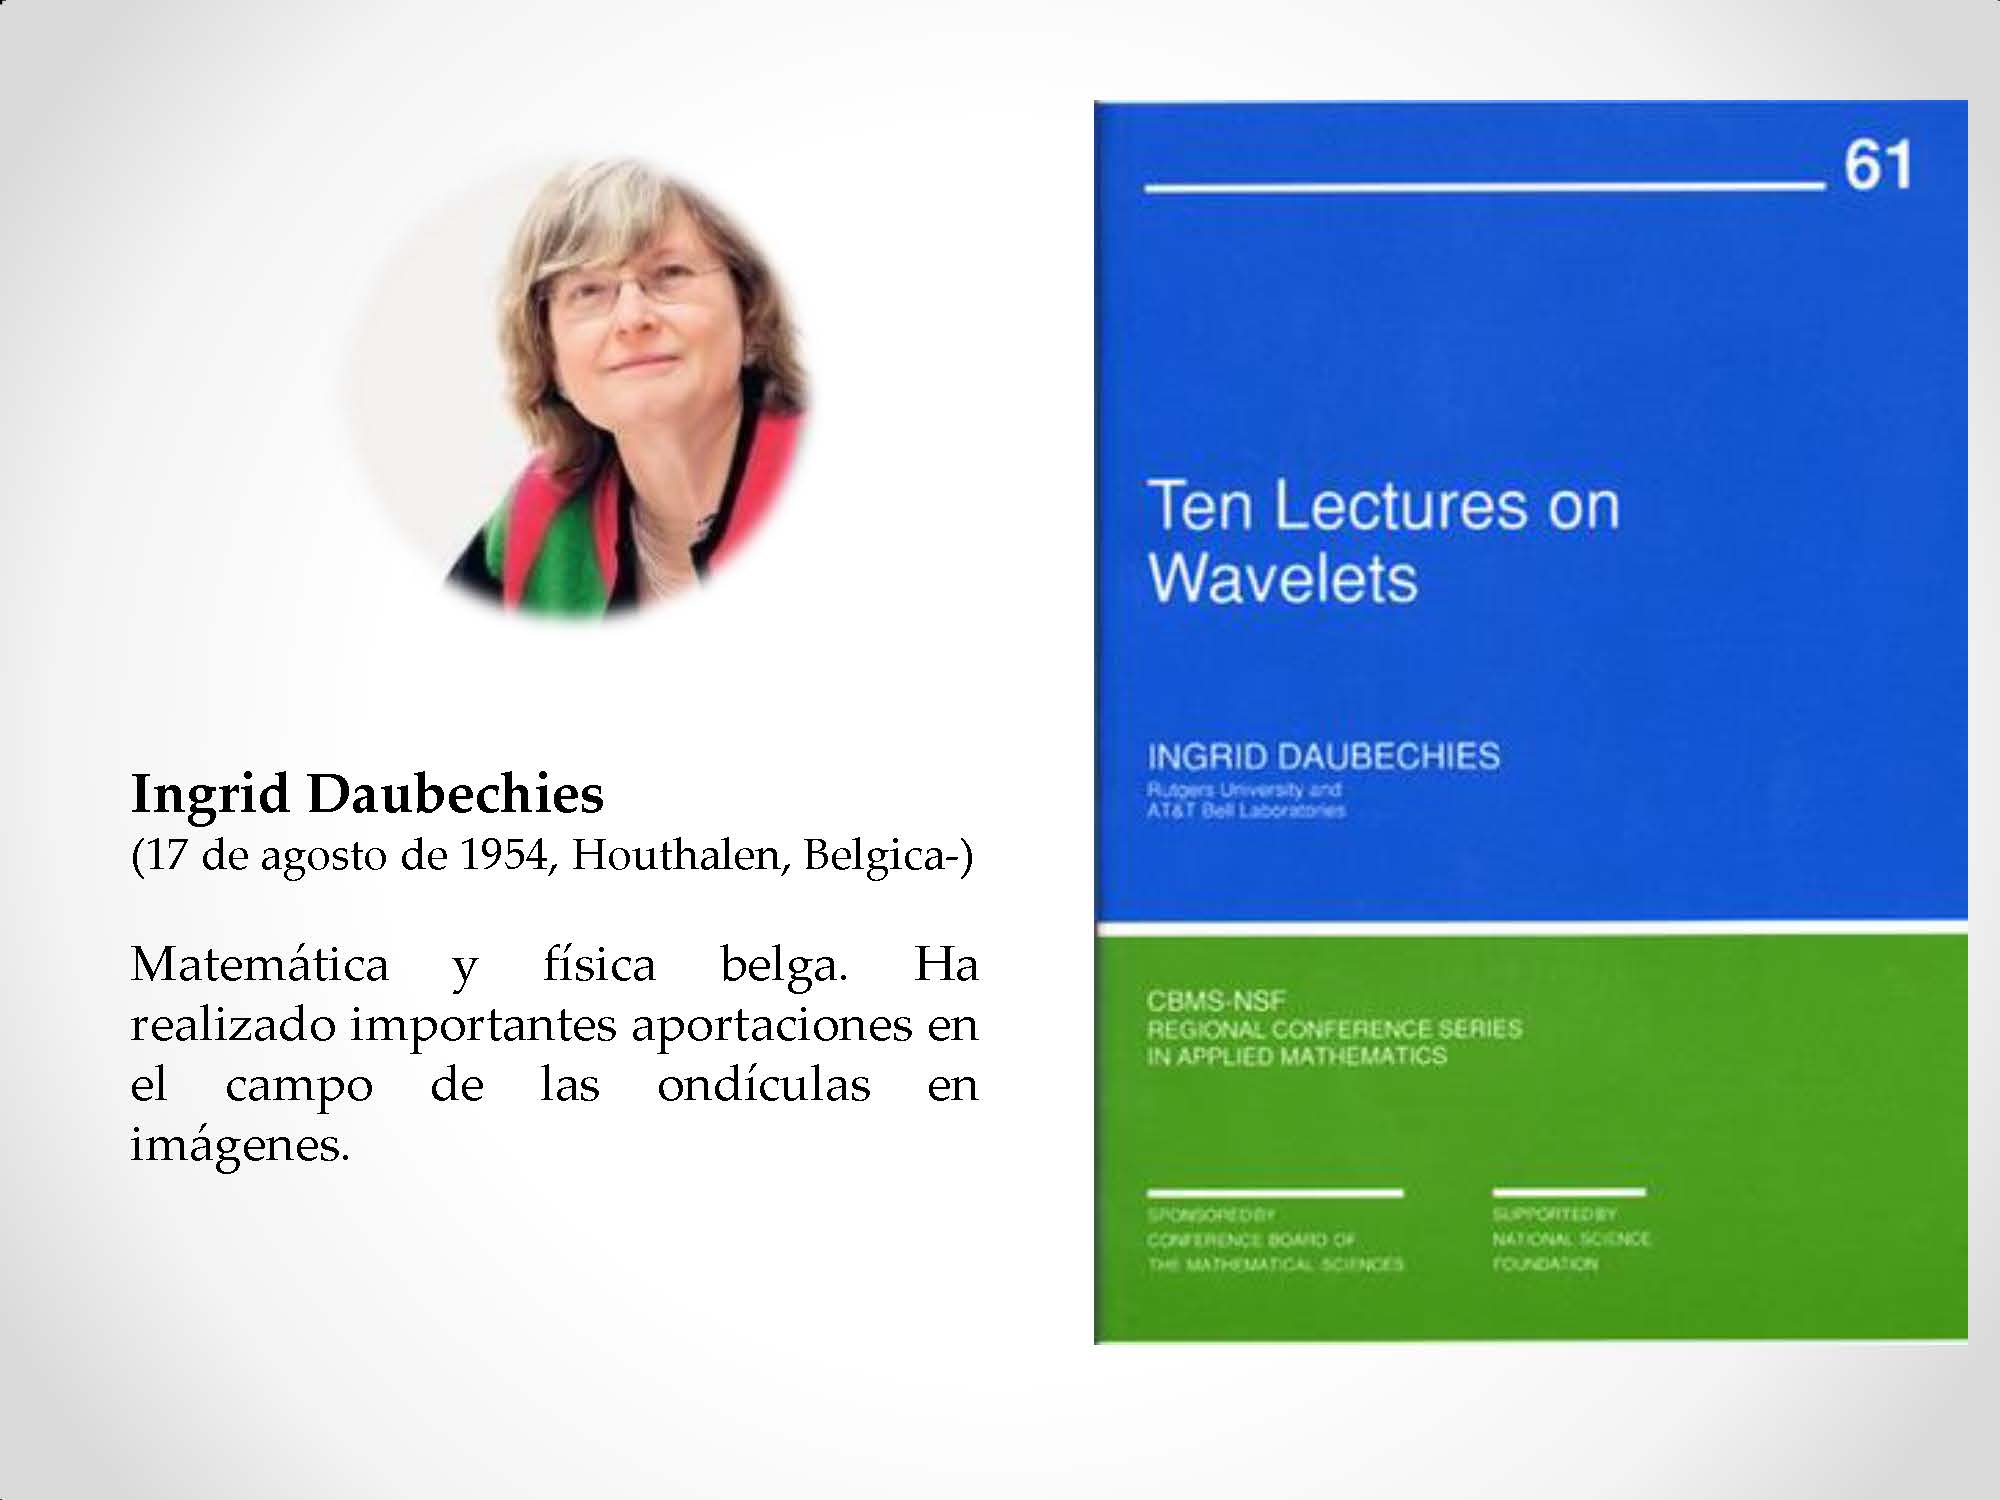 Ingrid Daubechies (17 de agosto de 1954, Houthalen, Belgica-) Matemática y física belga. Ha realizado importantes aportaciones en el campo de las ondículas en imágenes.